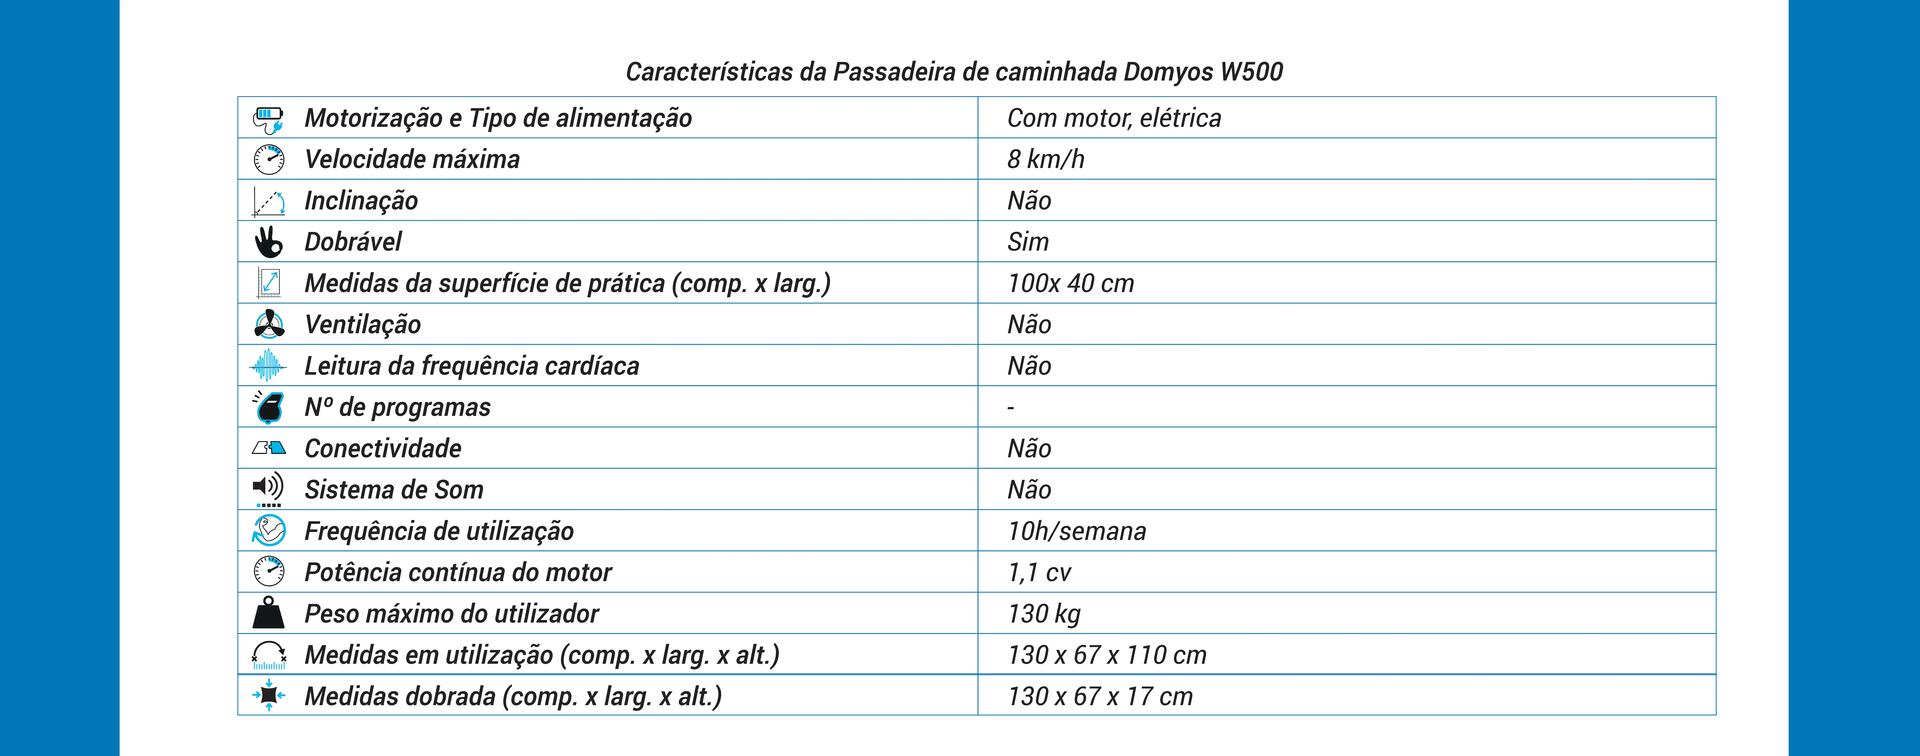 Tabela com características da Passadeira de caminhada domyos W500